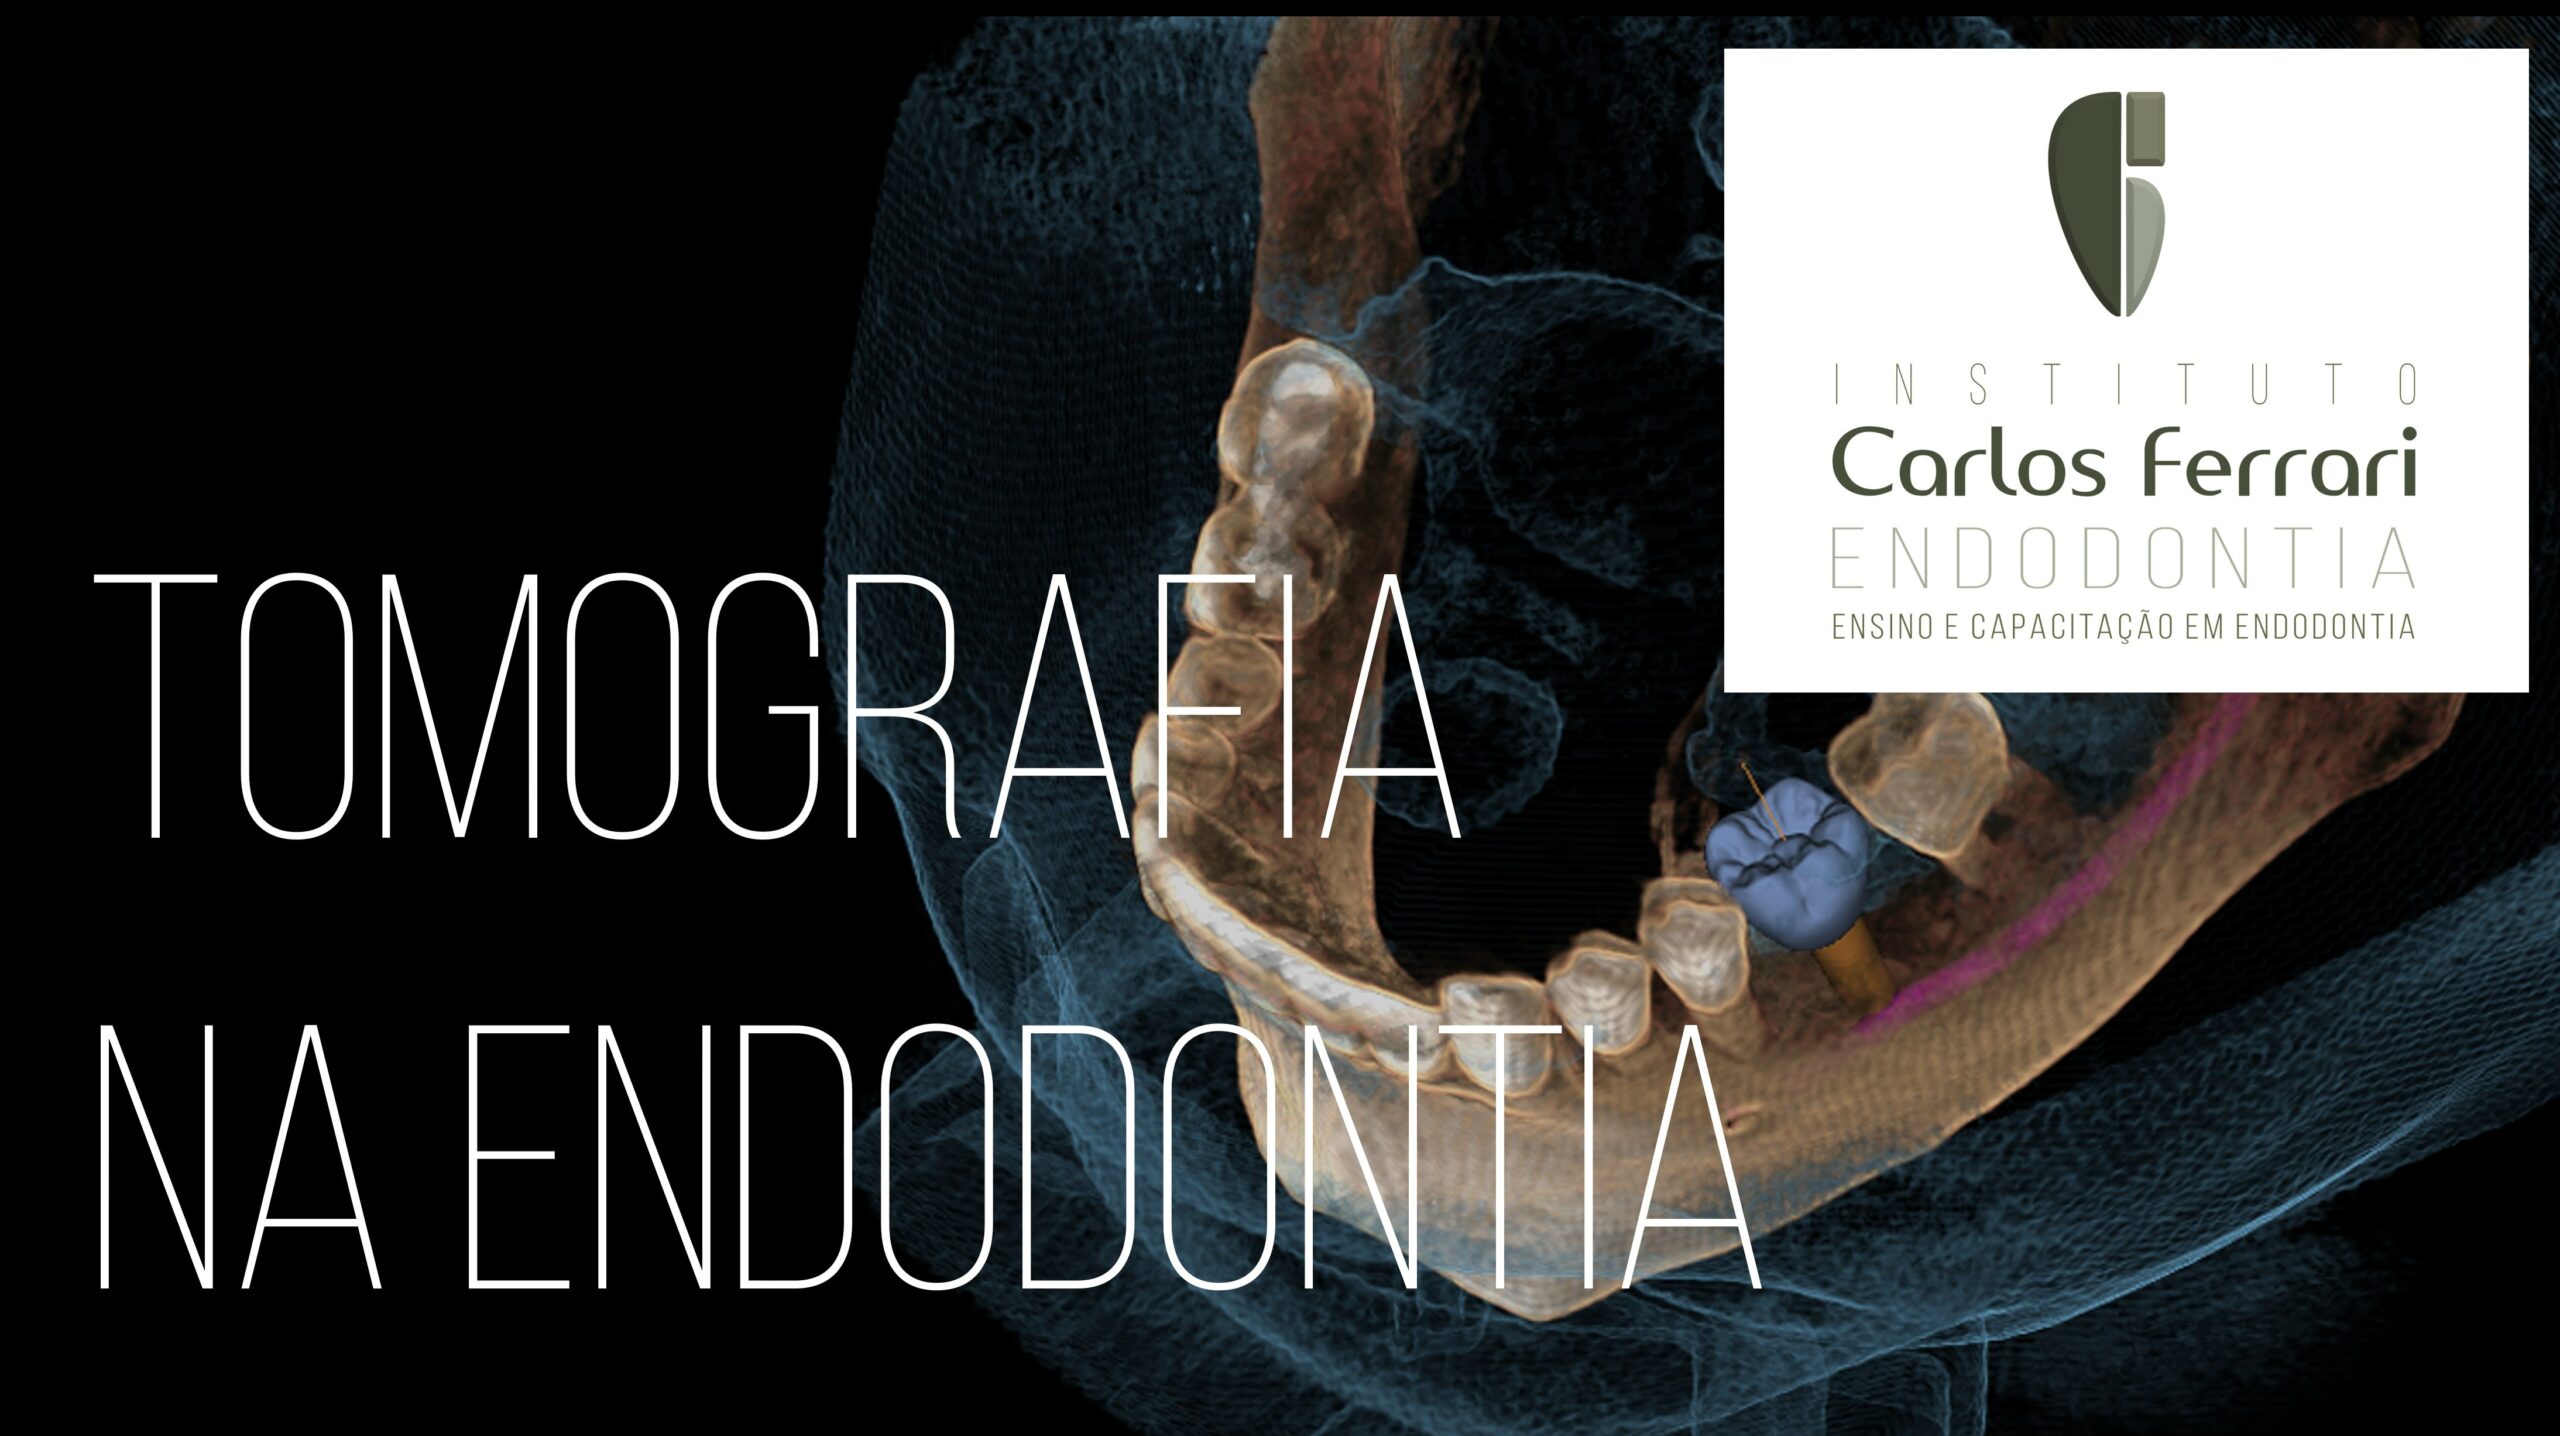 You are currently viewing Tomografia na endodontia. Introdução. Aula online.